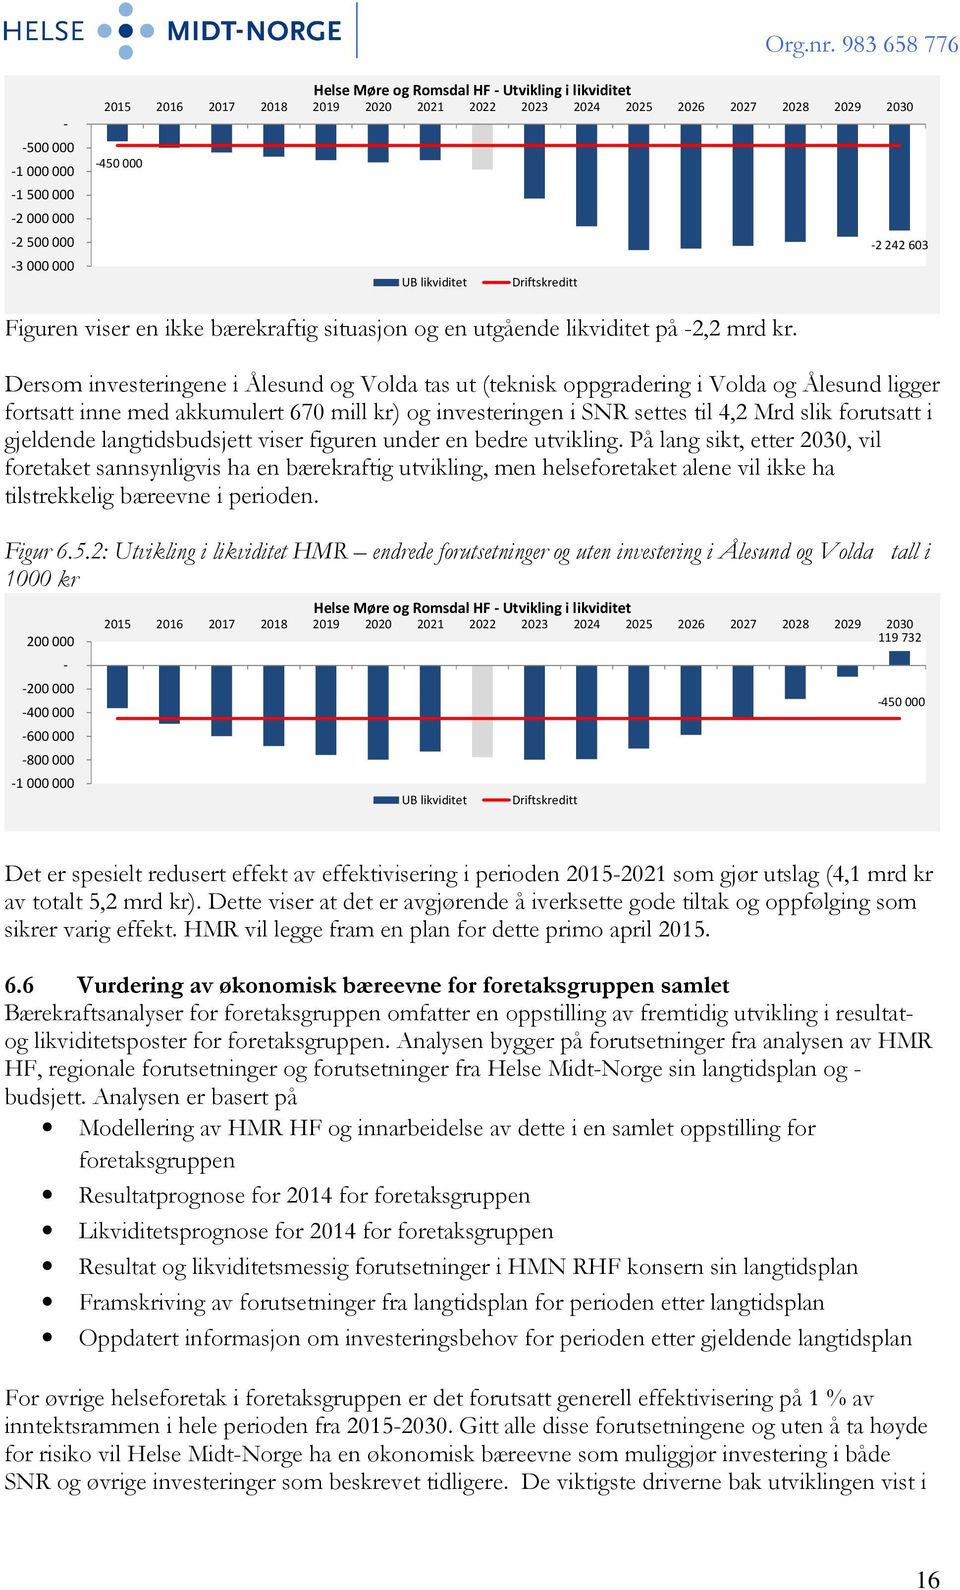 Dersom investeringene i Ålesund og Volda tas ut (teknisk oppgradering i Volda og Ålesund ligger fortsatt inne med akkumulert 670 mill kr) og investeringen i SNR settes til 4,2 Mrd slik forutsatt i